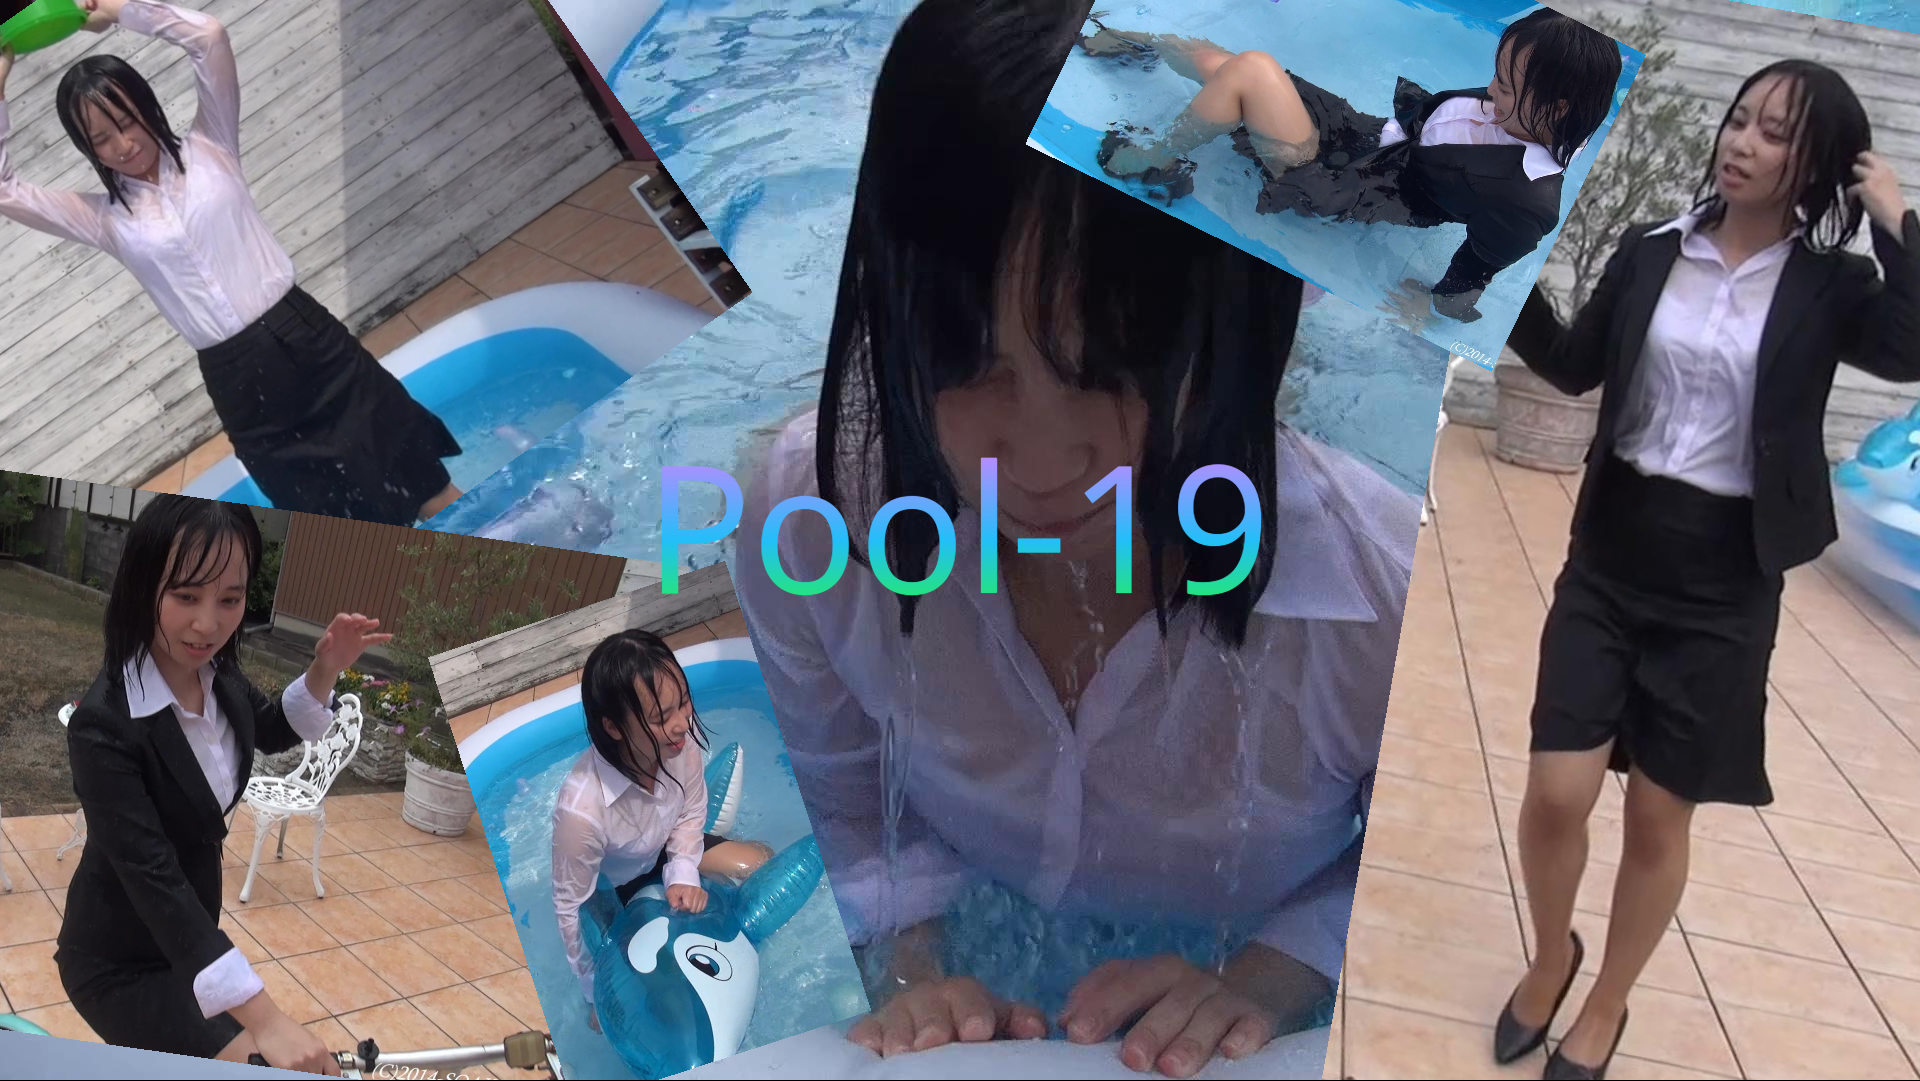 [Wet] Pool-19